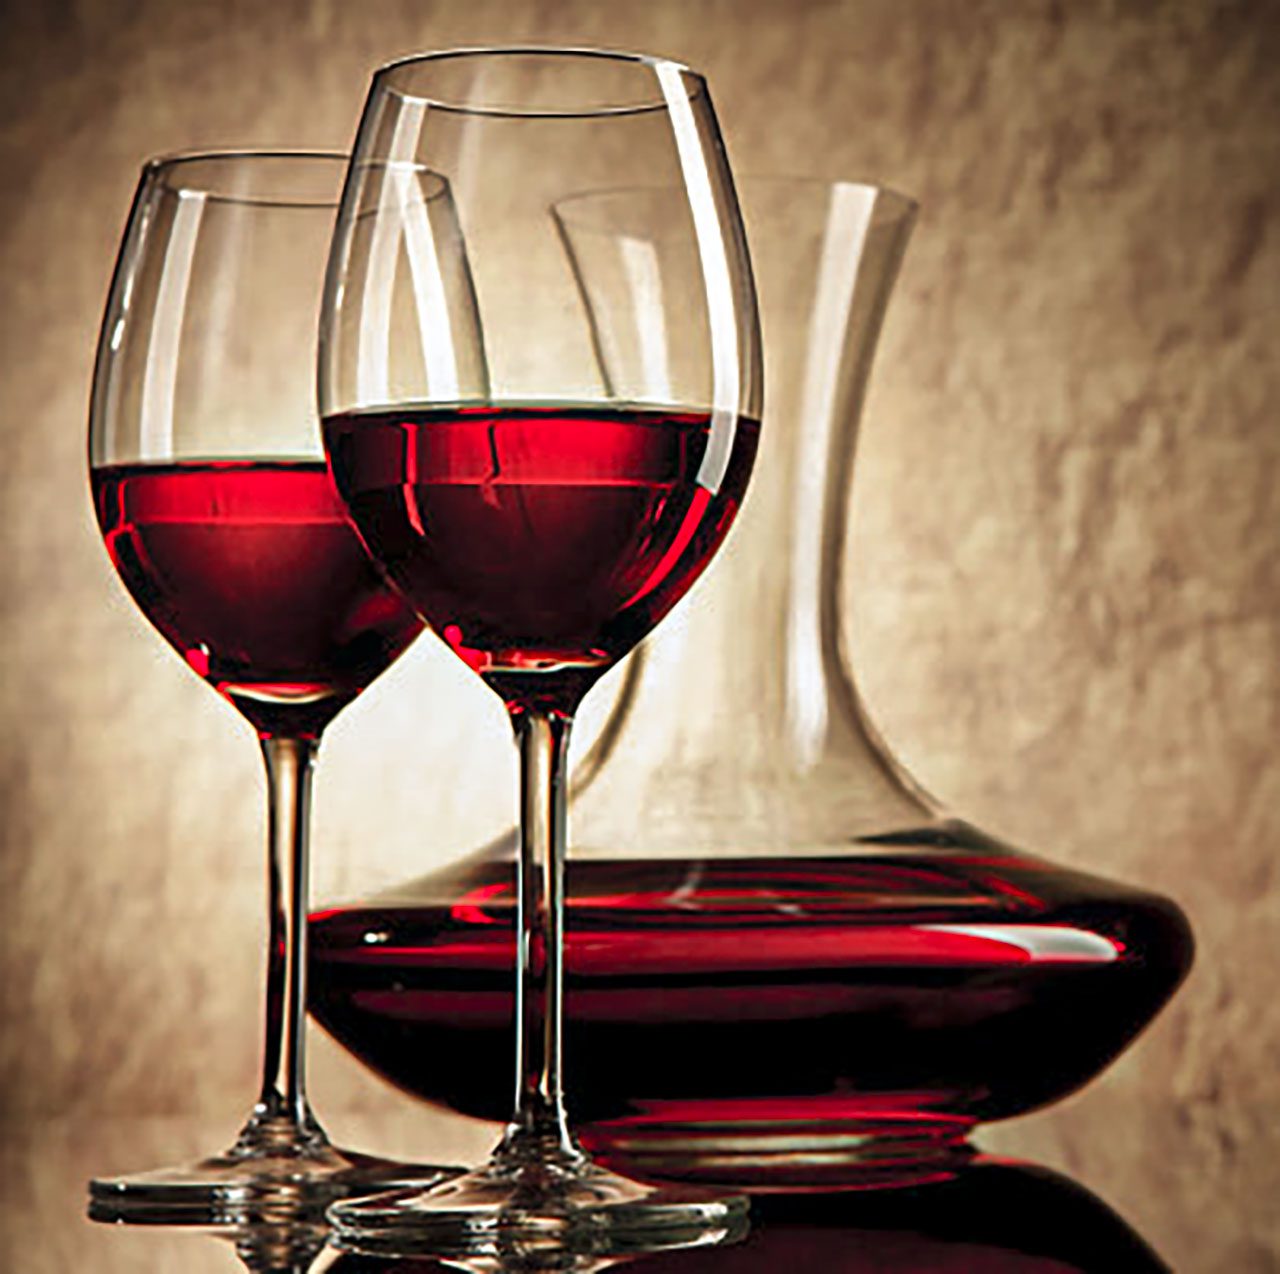 Decantare il vino è un processo per togliere le impurità